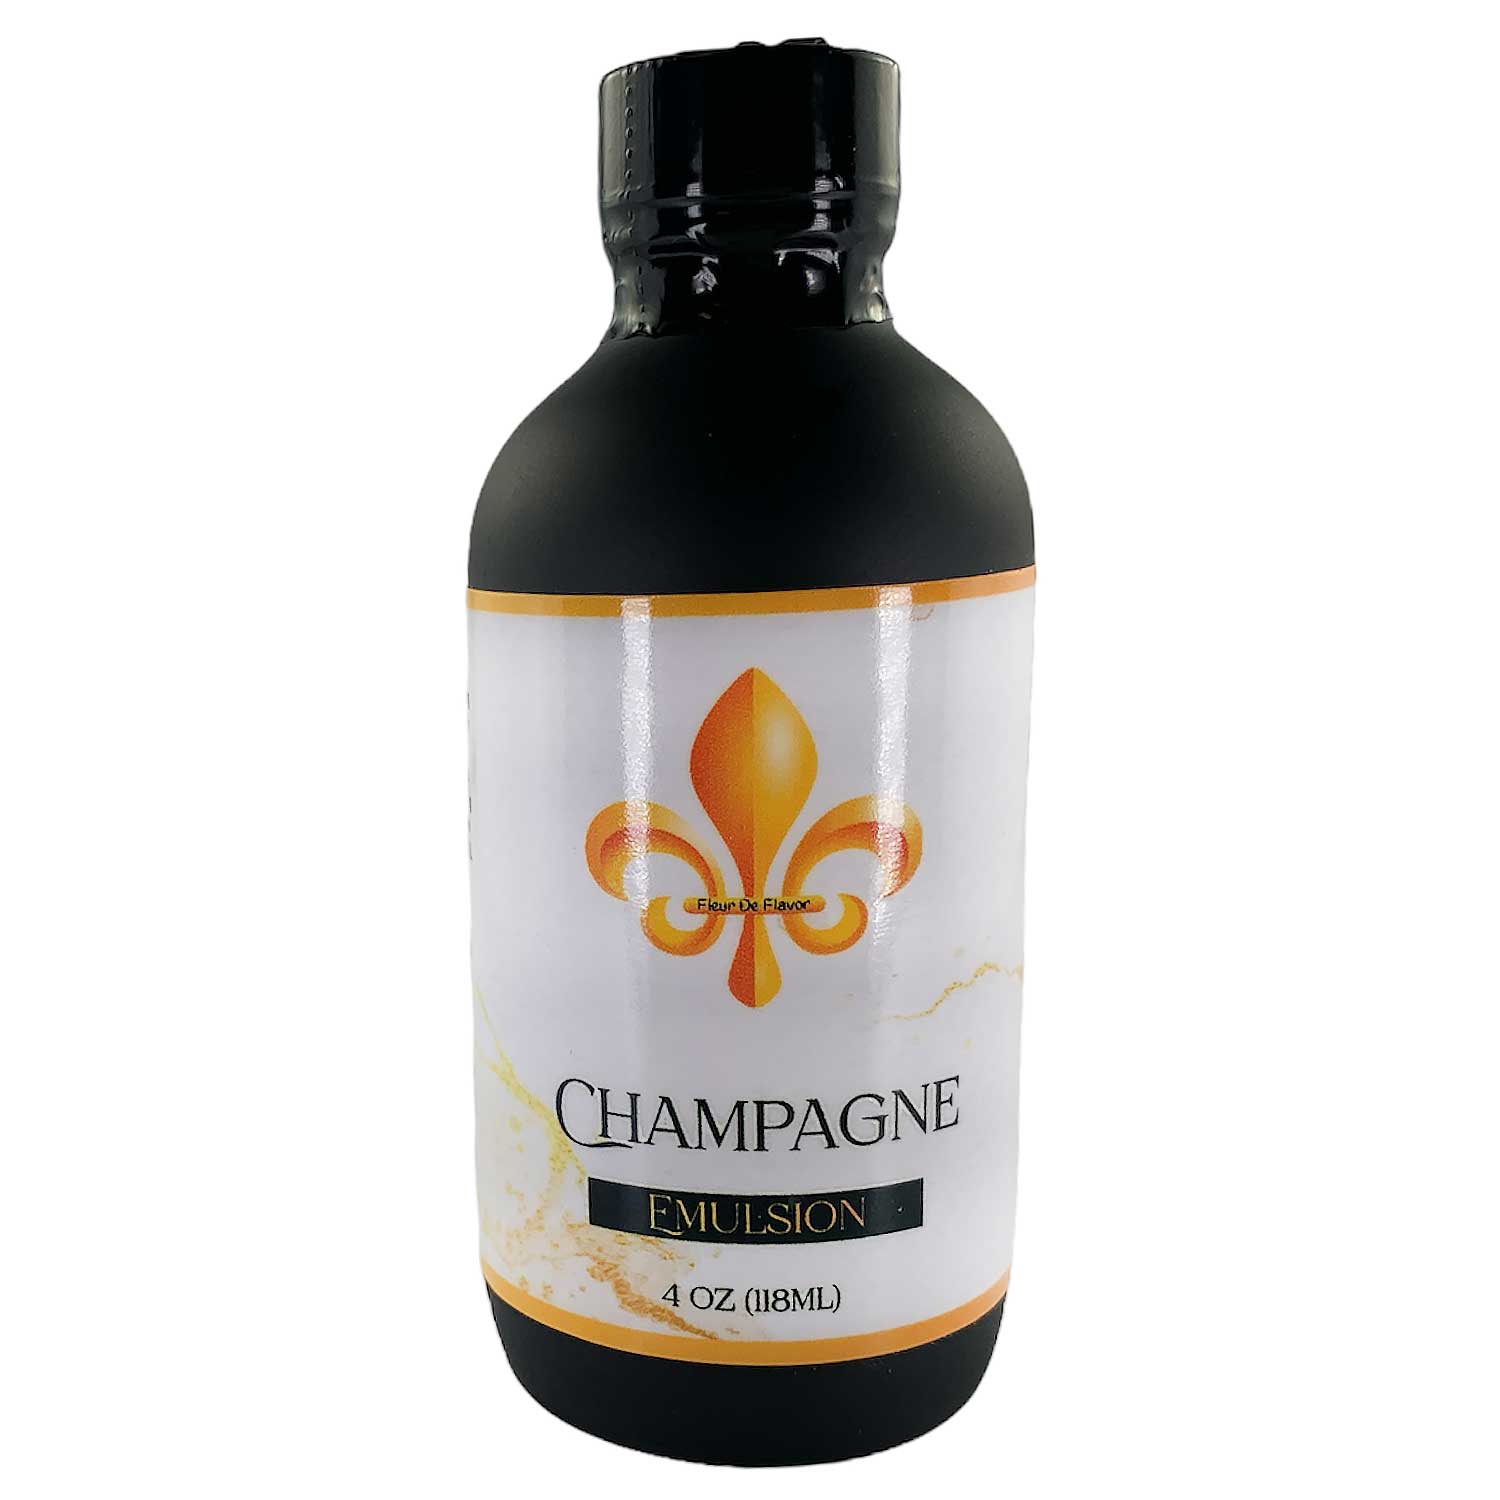 Champagne Emulsion